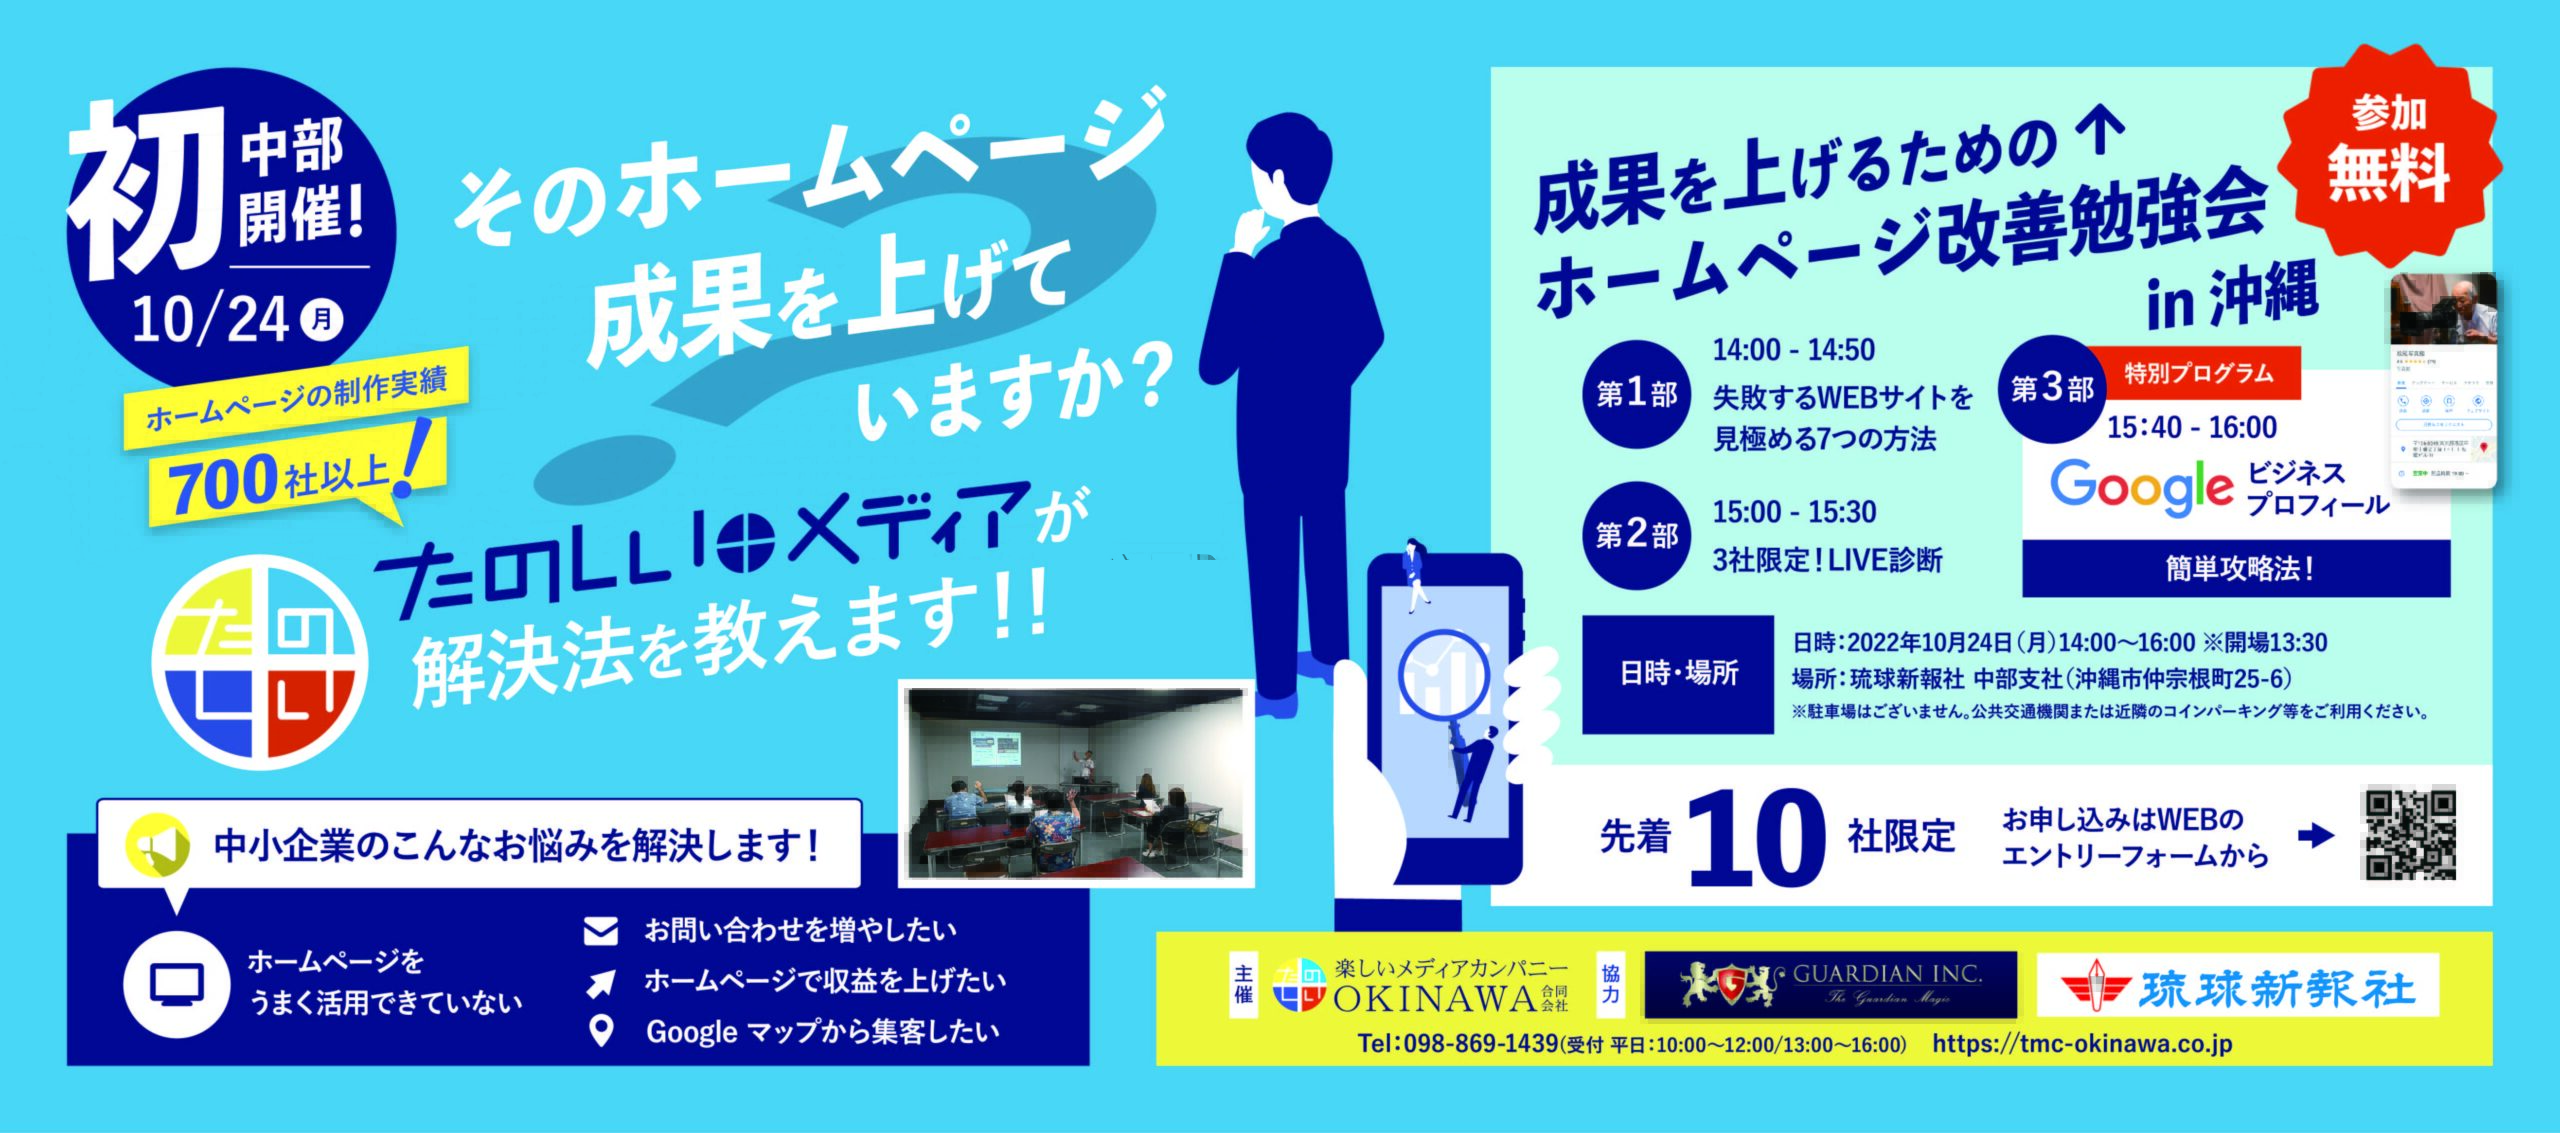 【第9回 成果を上げるためのHP改善勉強会in沖縄】のお知らせ